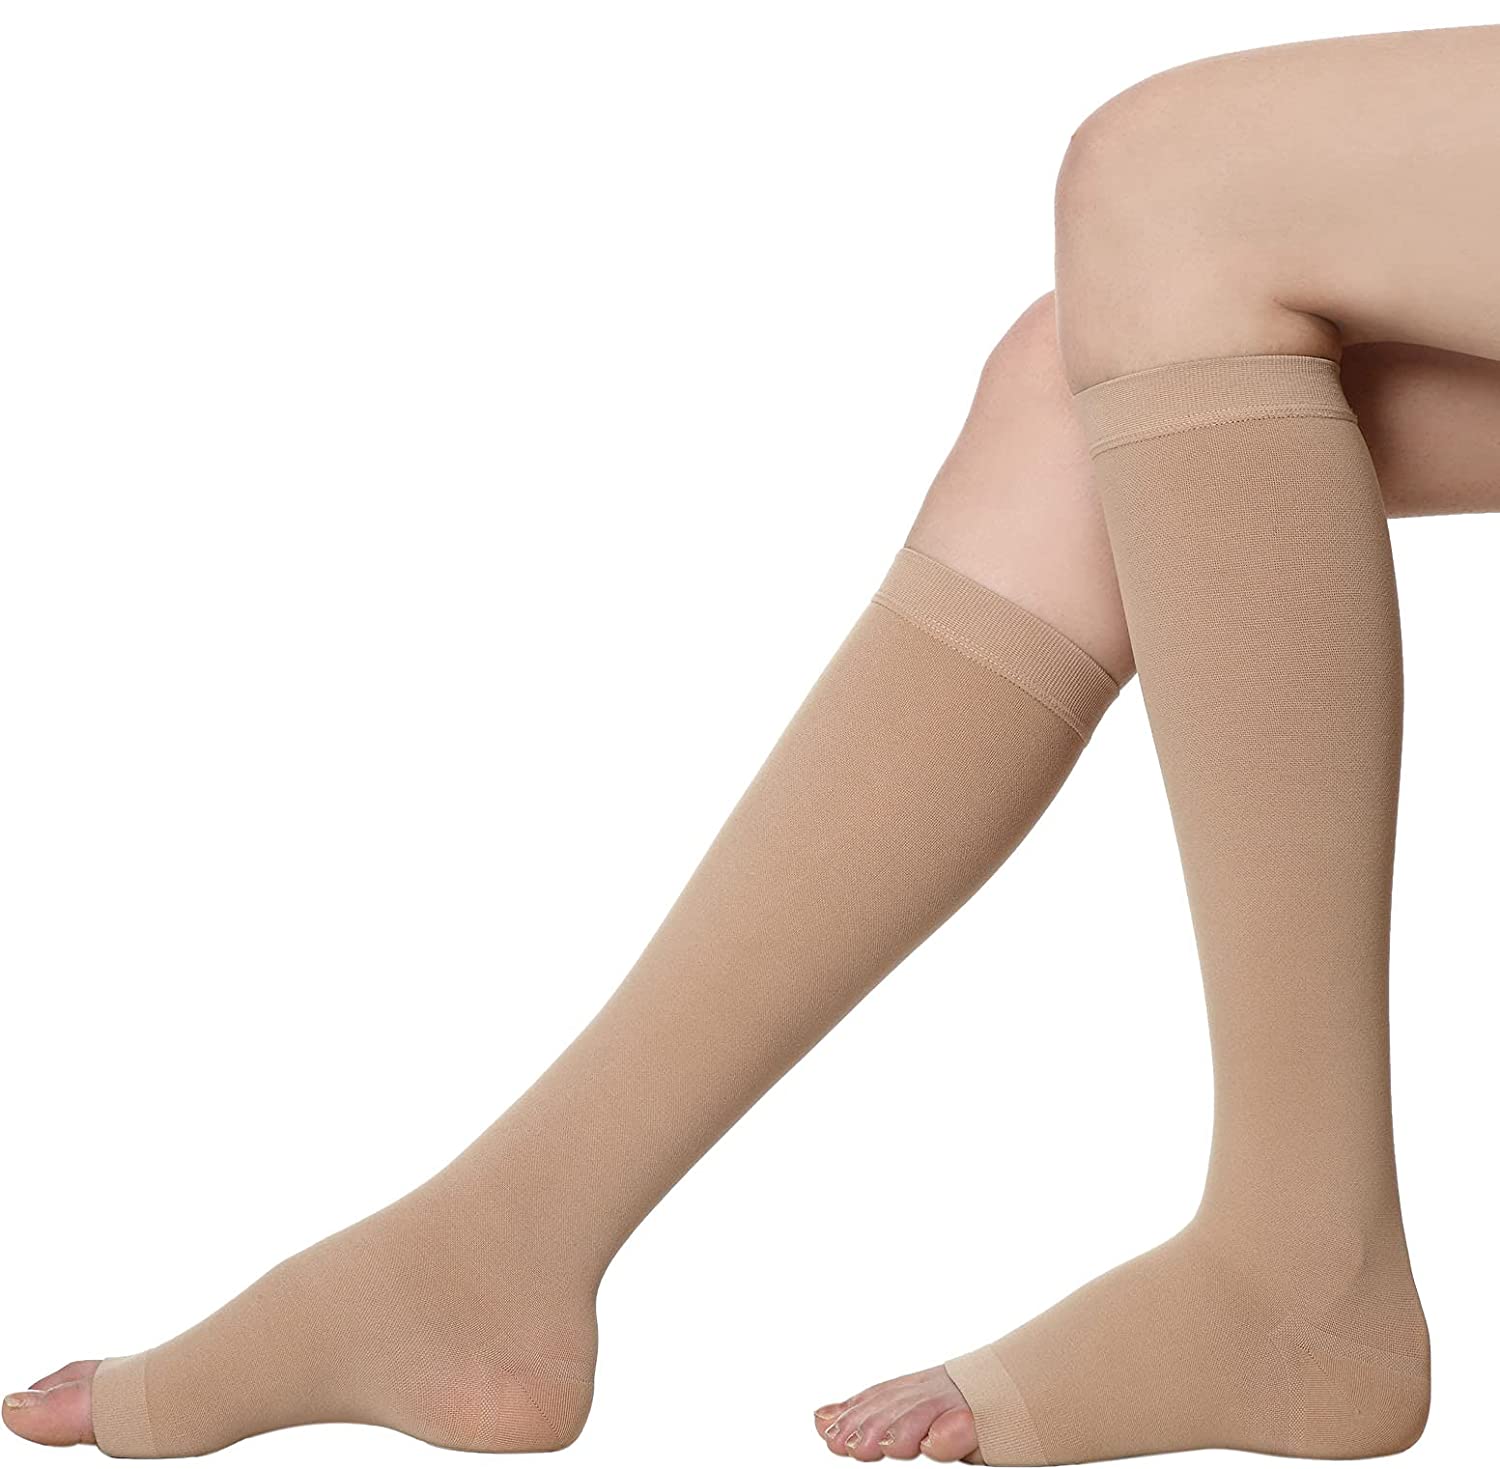 Medtex Below Knee stockings